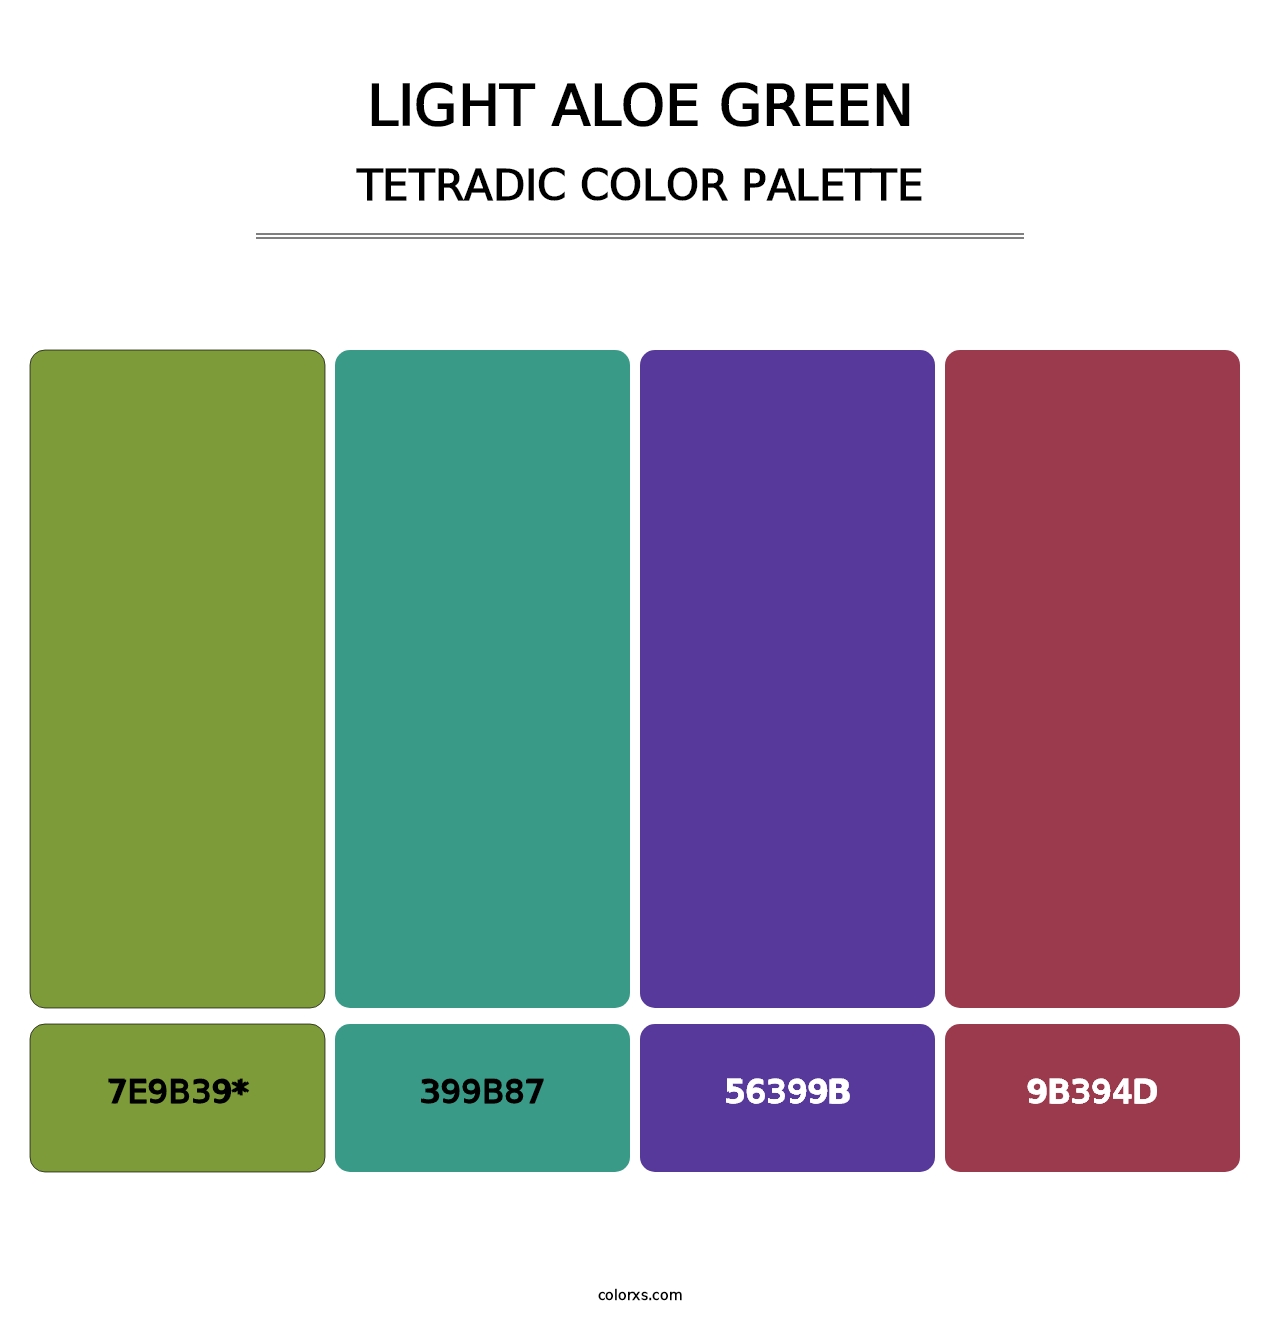 Light Aloe Green - Tetradic Color Palette